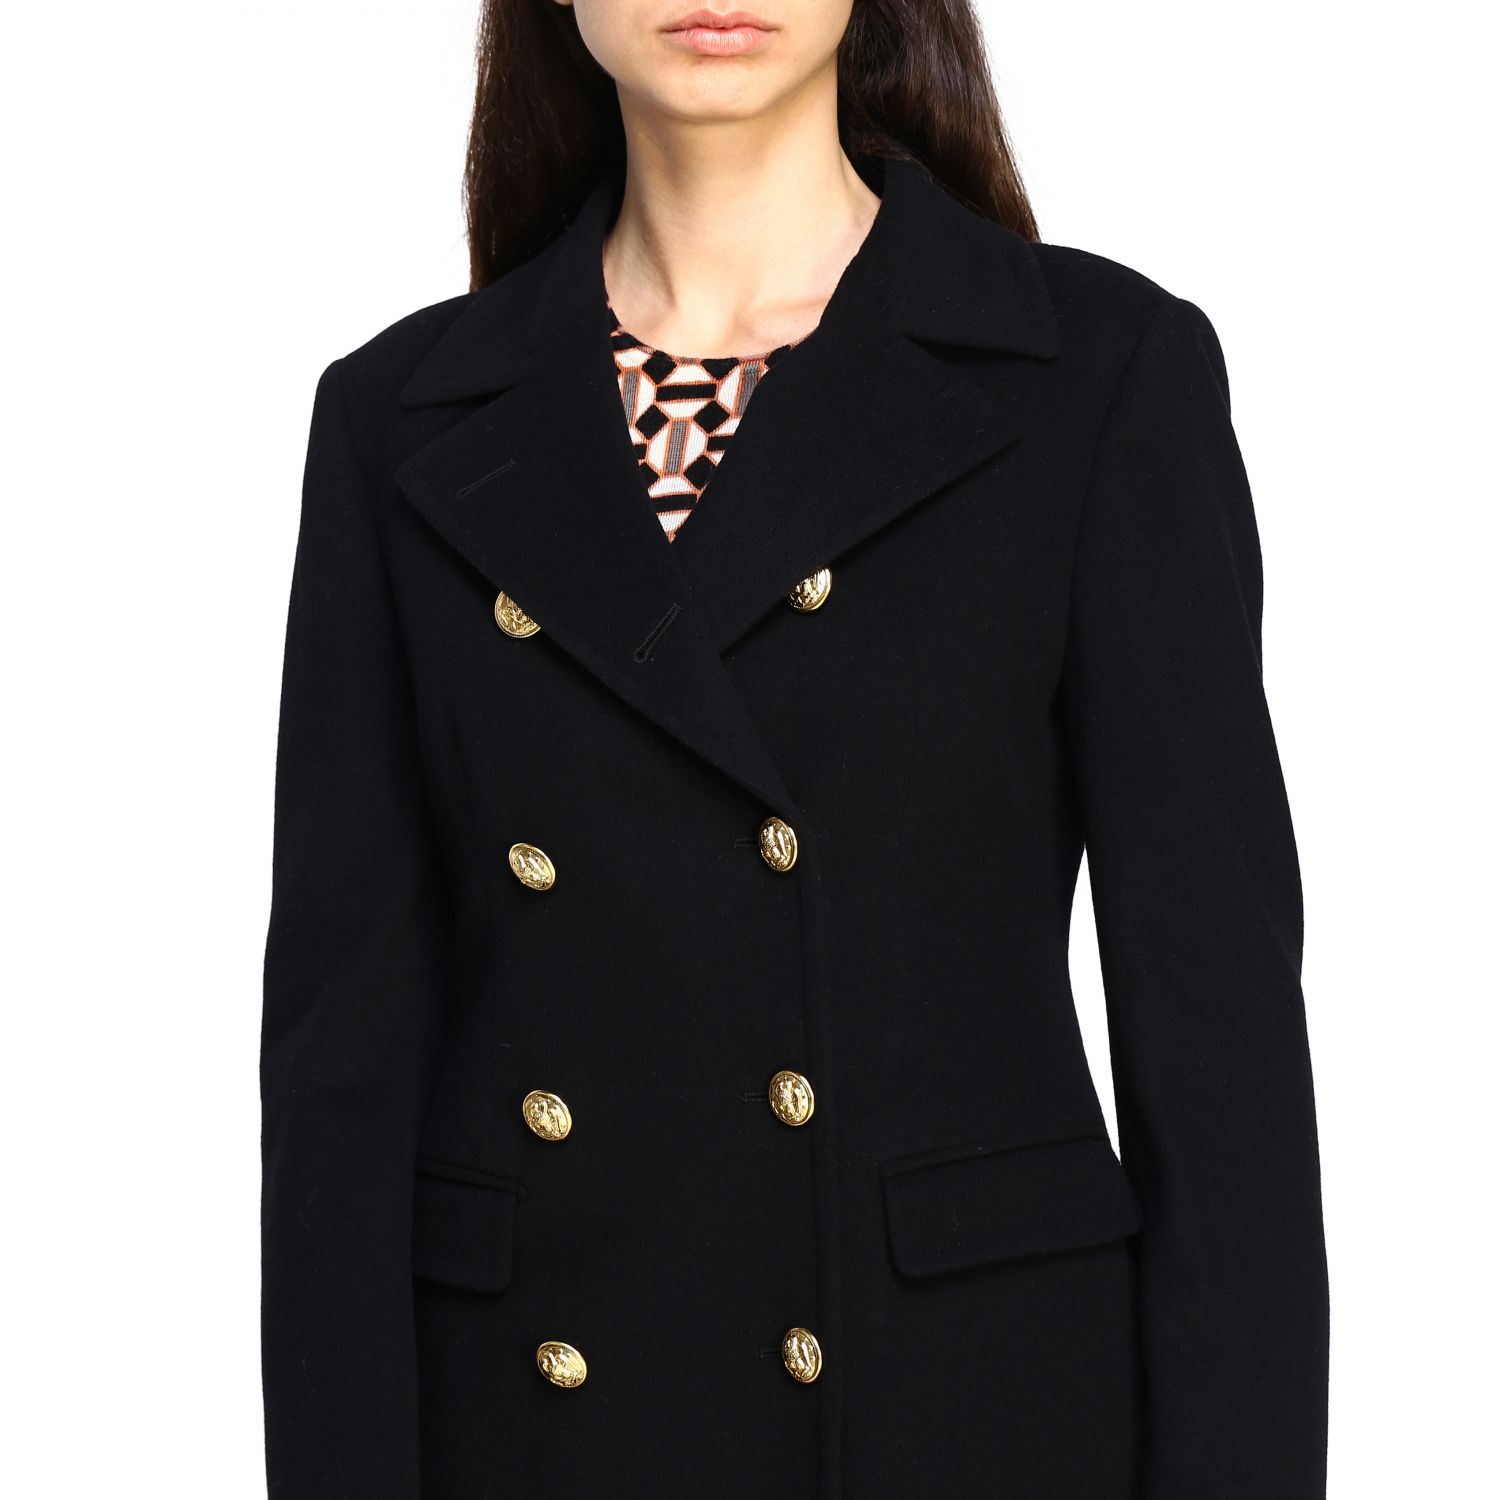 Tagliatore Outlet: Coat women | Coat Tagliatore Women Black | Coat ...